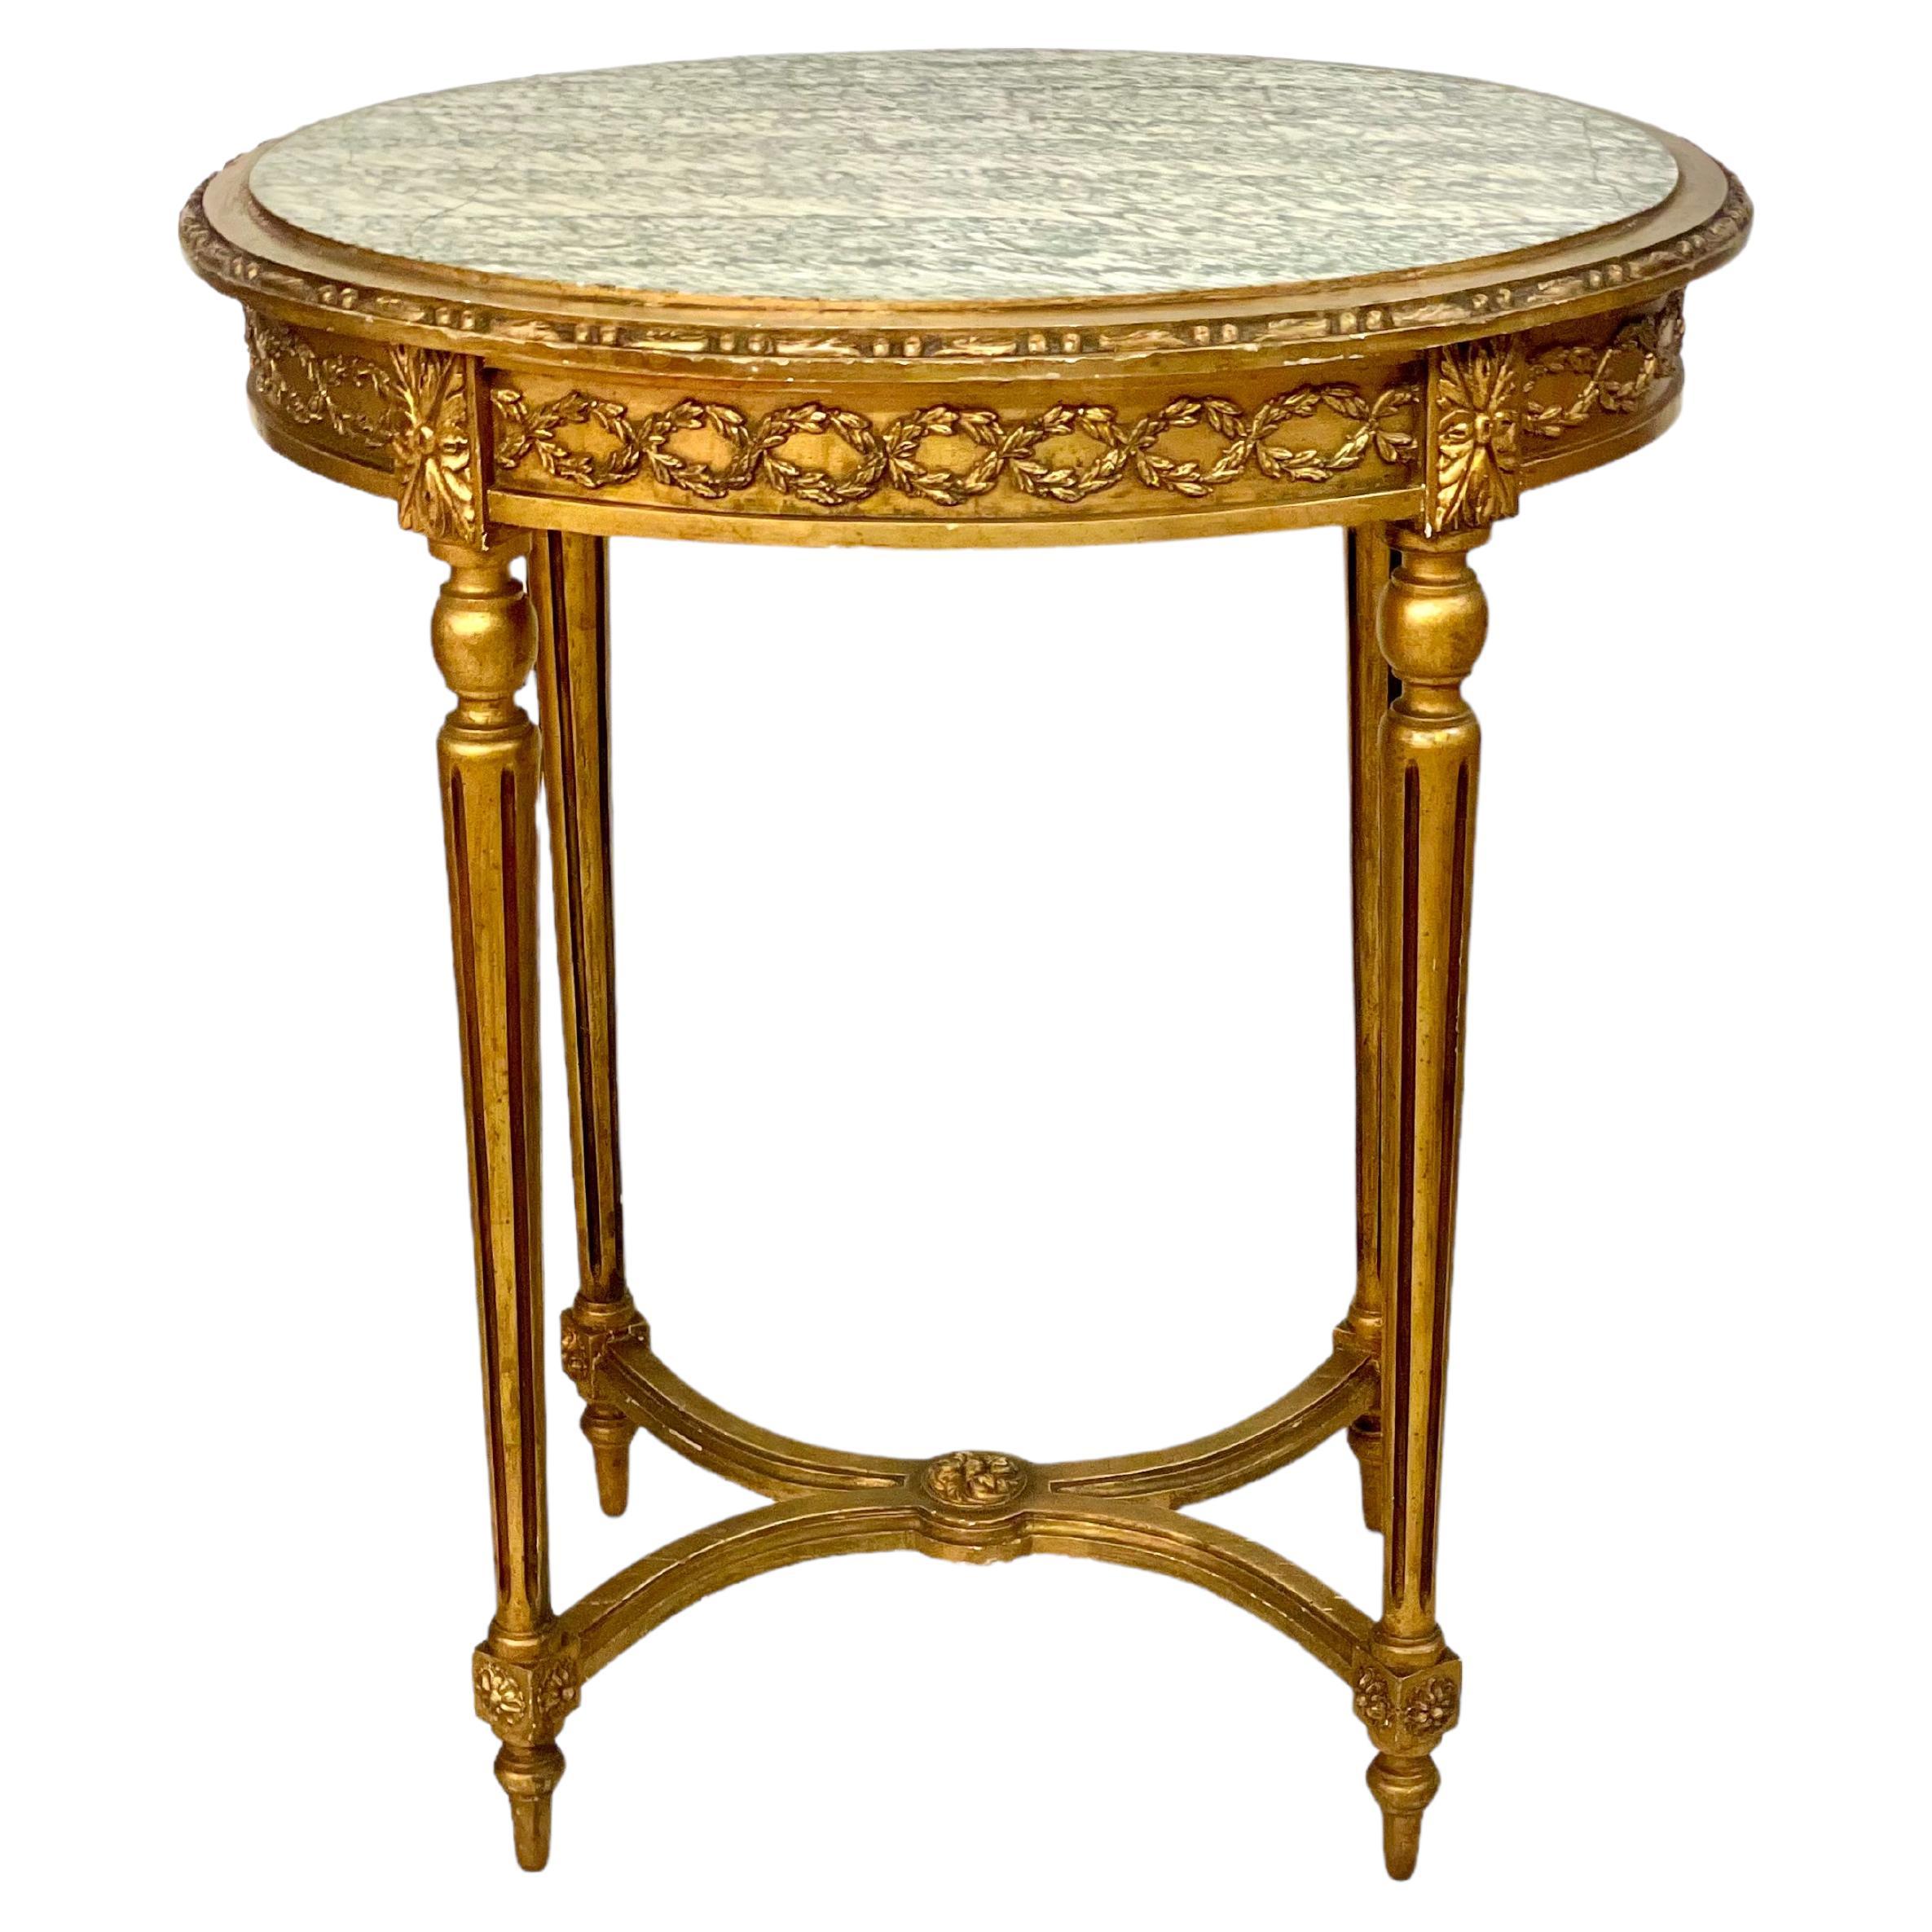 Table de centre Louis XVI du 19e siècle, doré, avec plateau en marbre